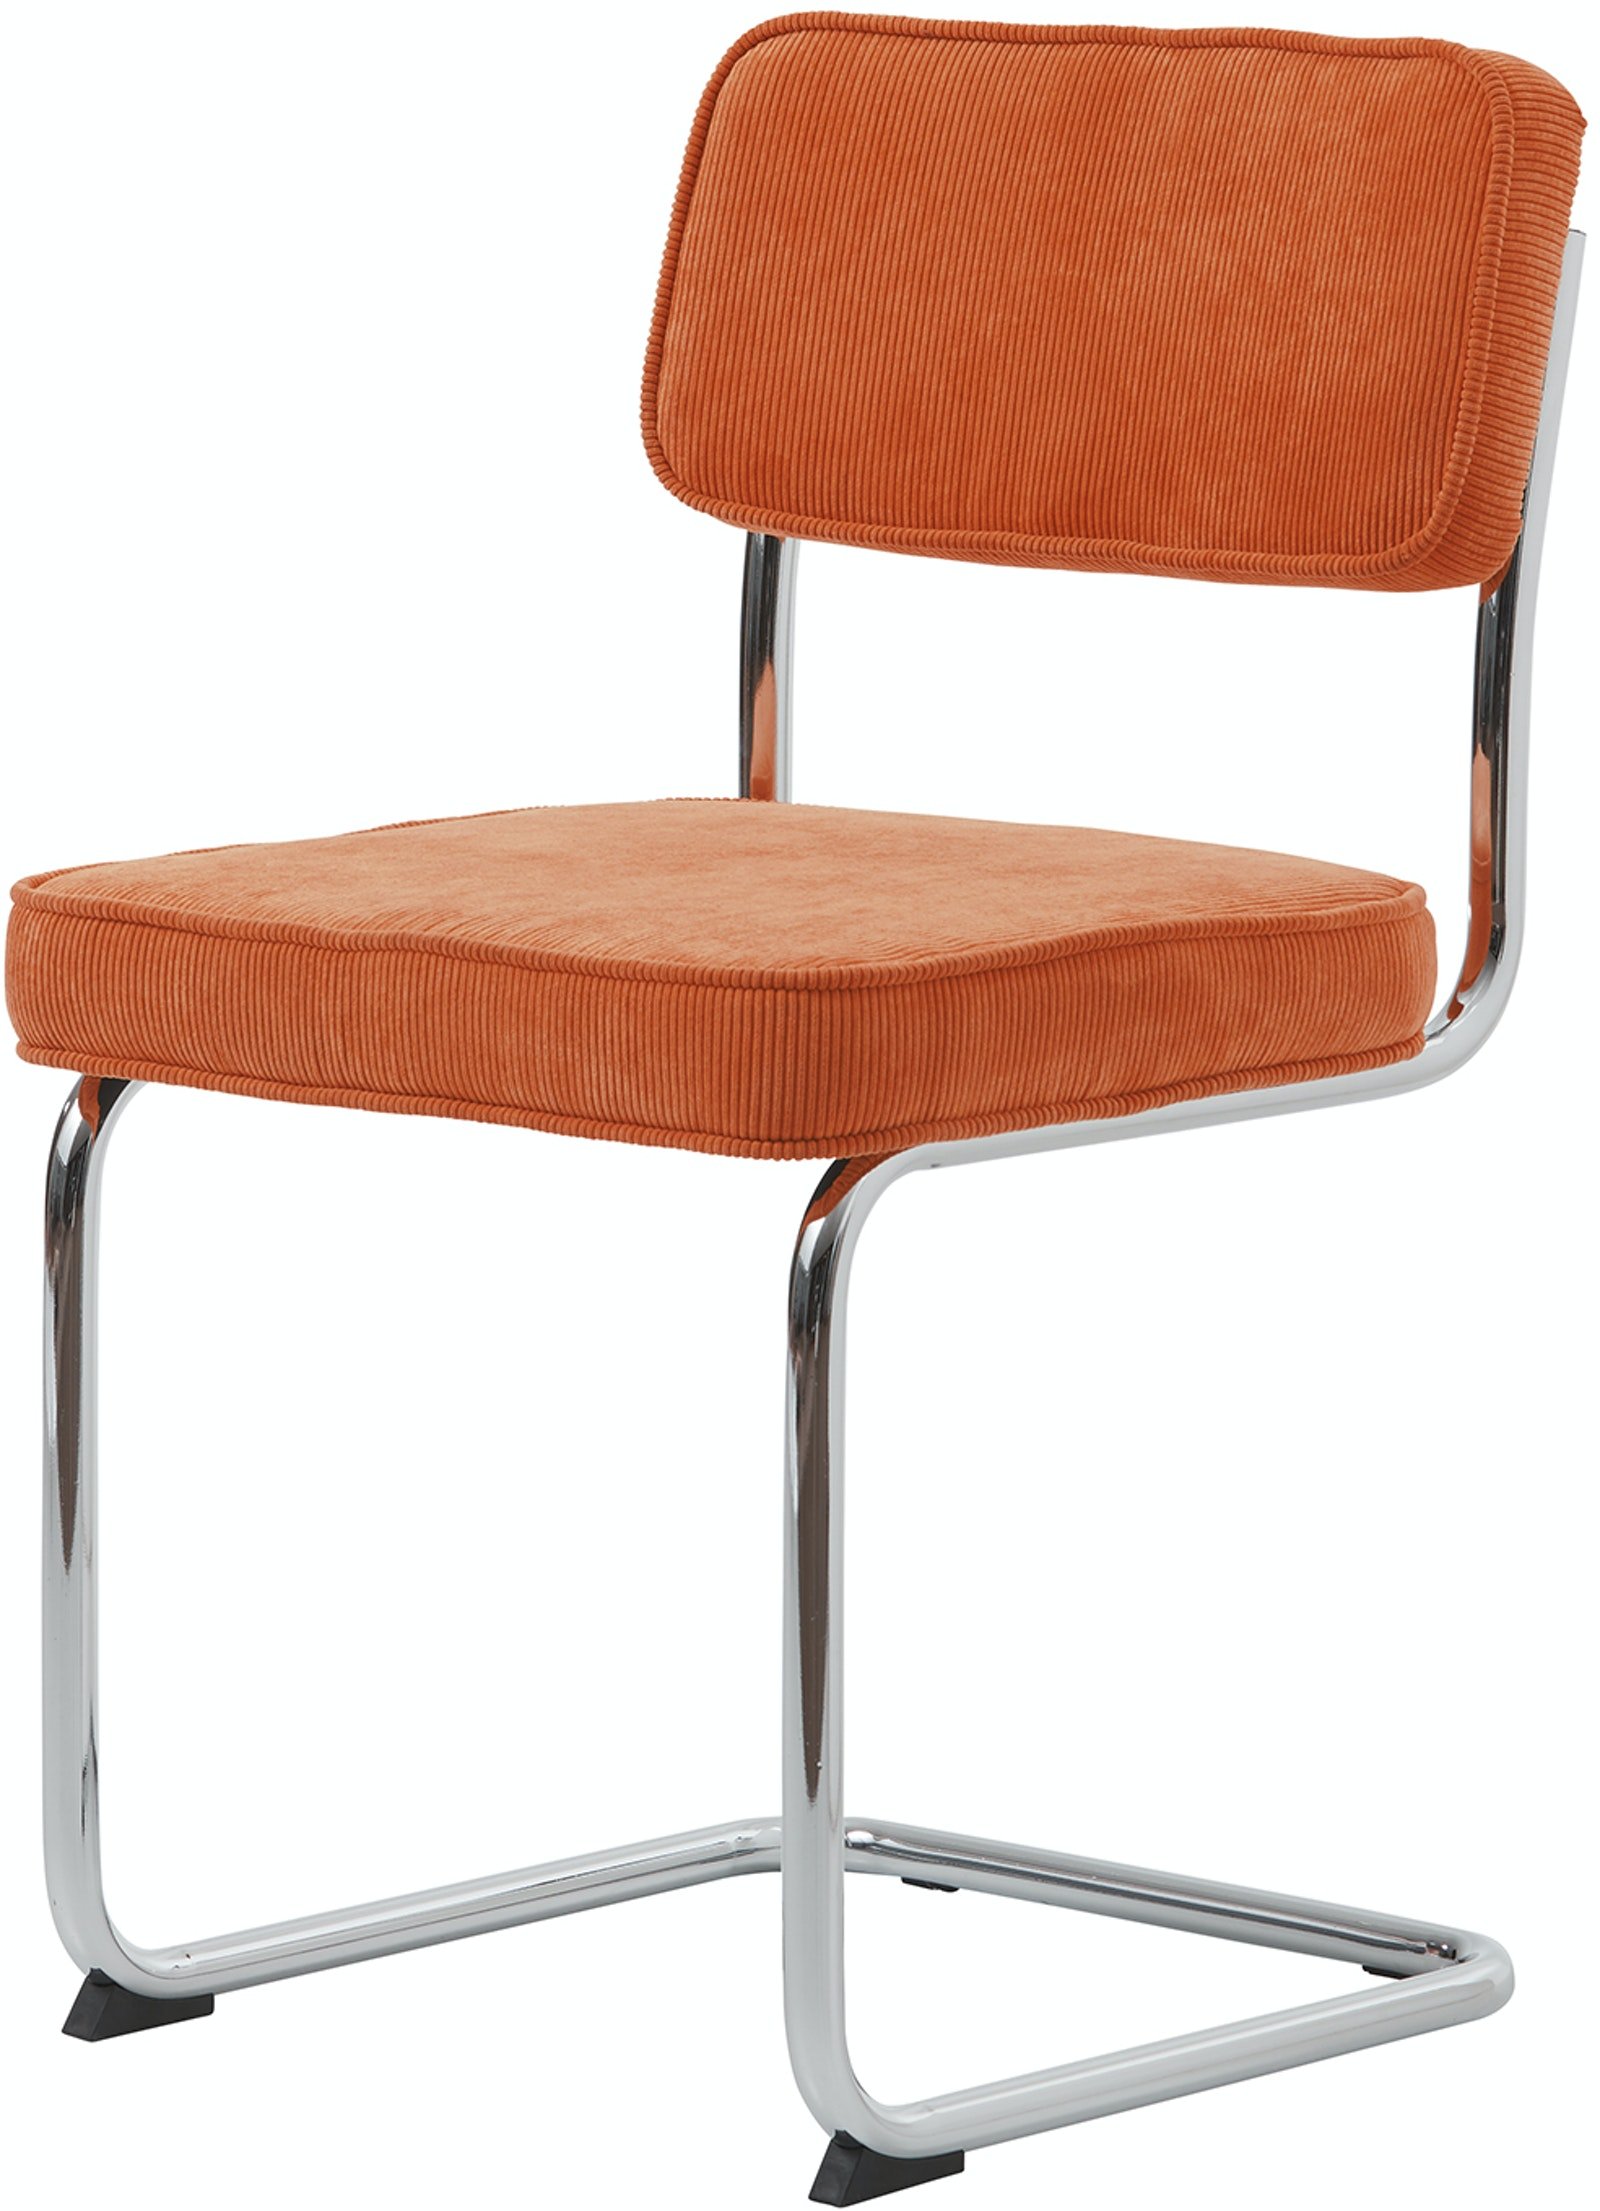 På billedet ser du variationen Rupert, Spisebordsstol, Stof fra brandet Unique Furniture i en størrelse H: 84 cm. x B: 50 cm. x L: 53 cm. i farven Orange/Krom